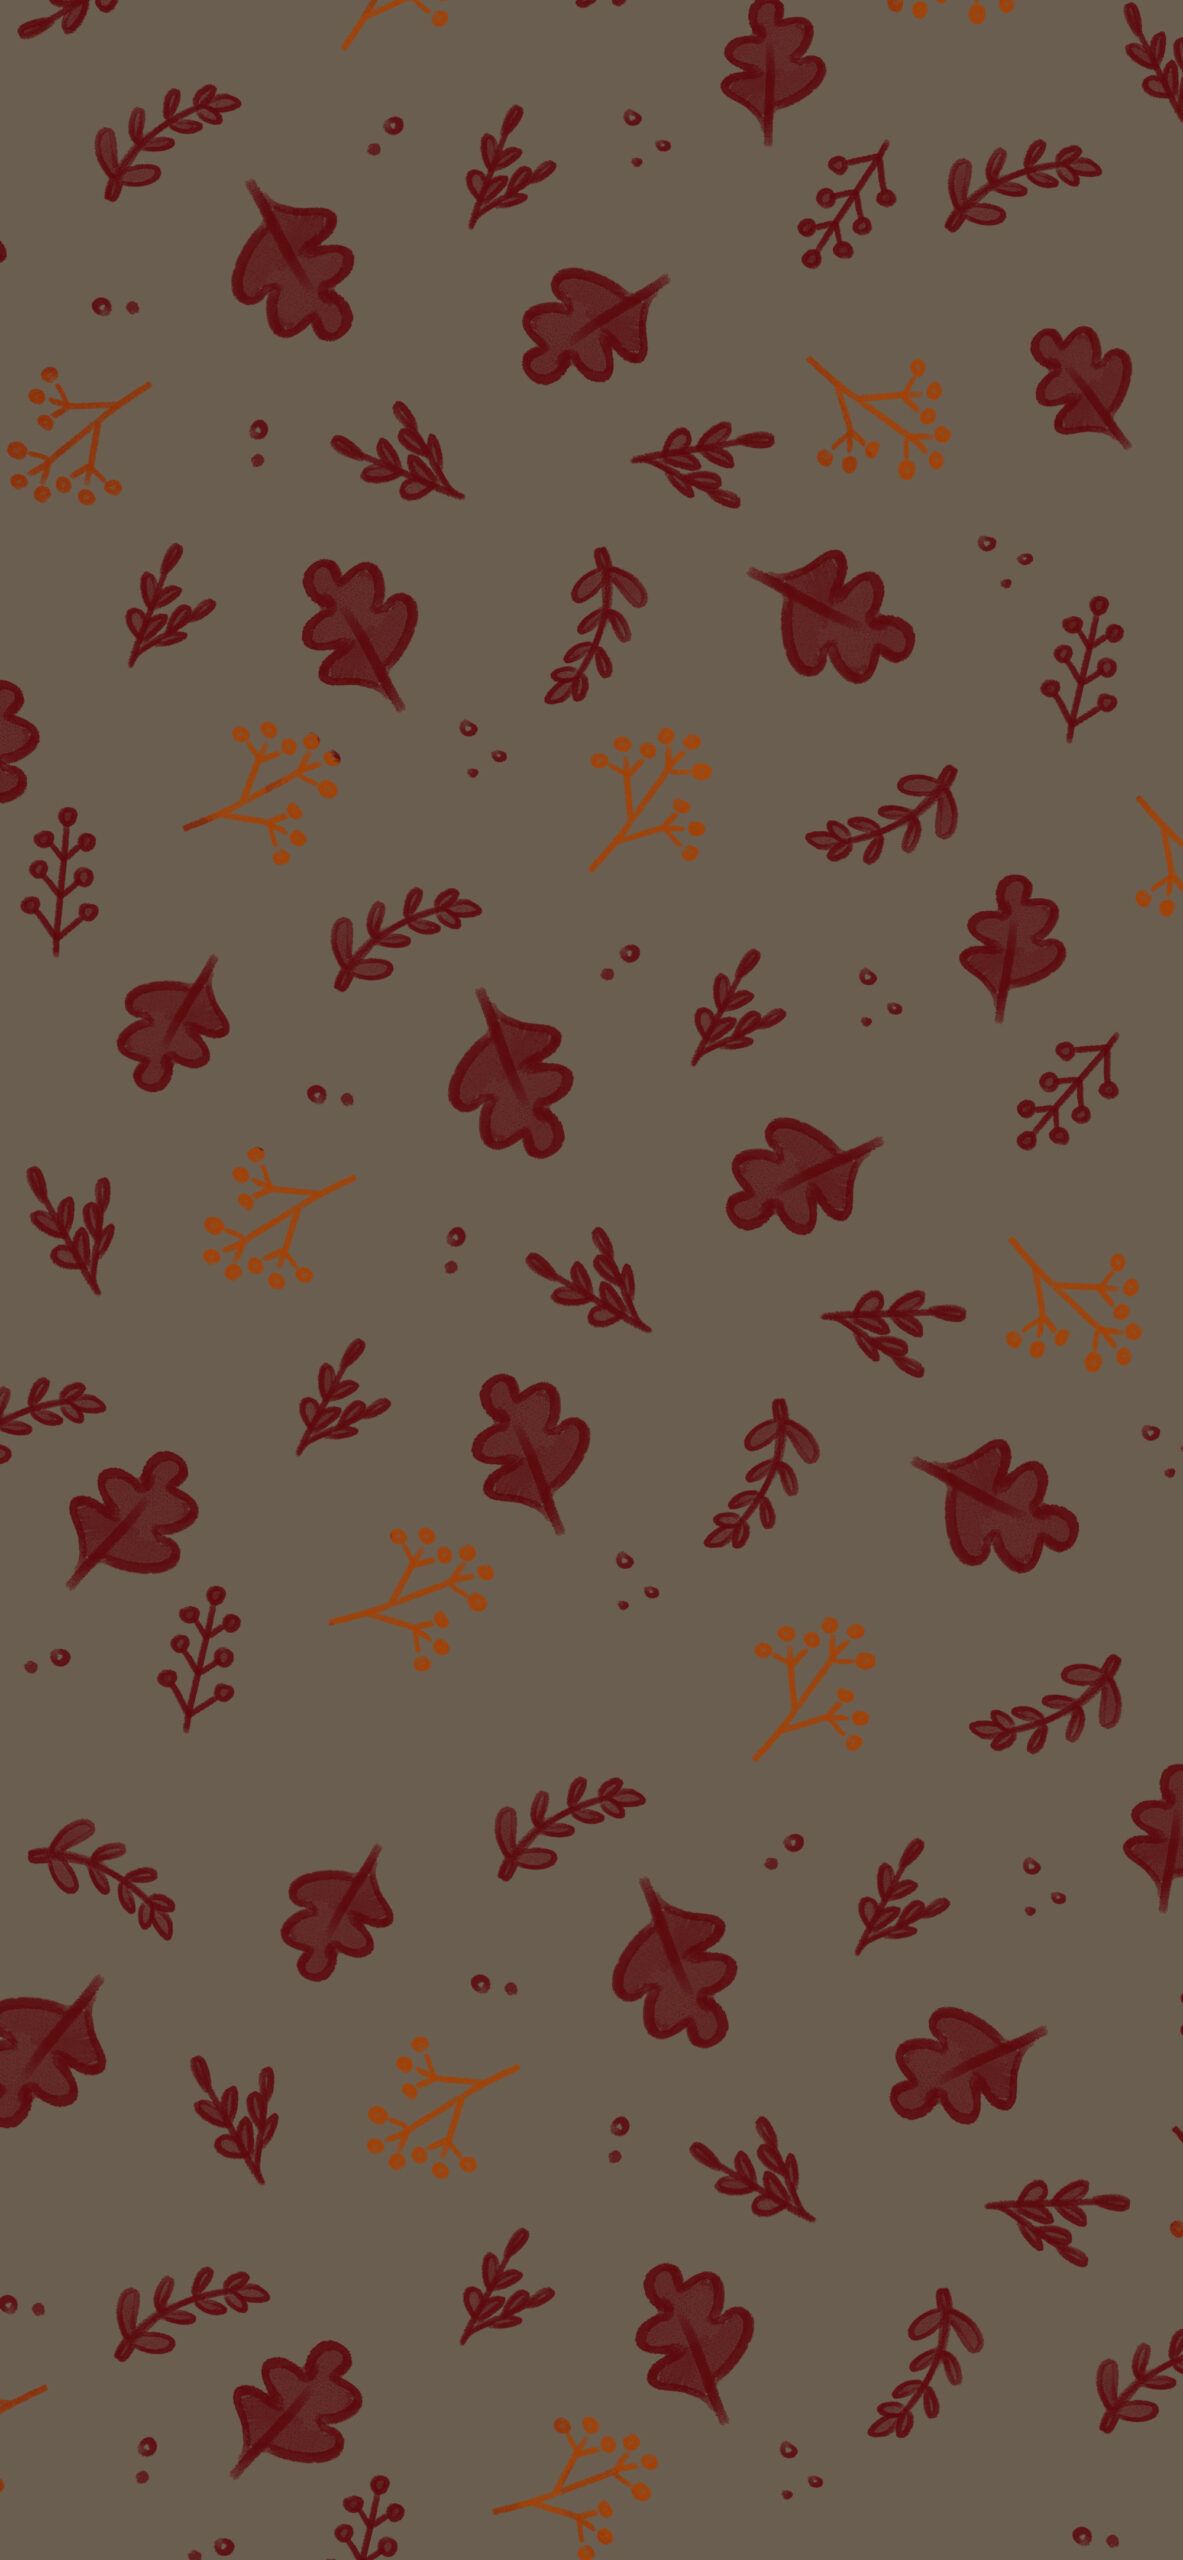 Oak Leaves Brown Wallpaper Fall Wallpaper for Phone